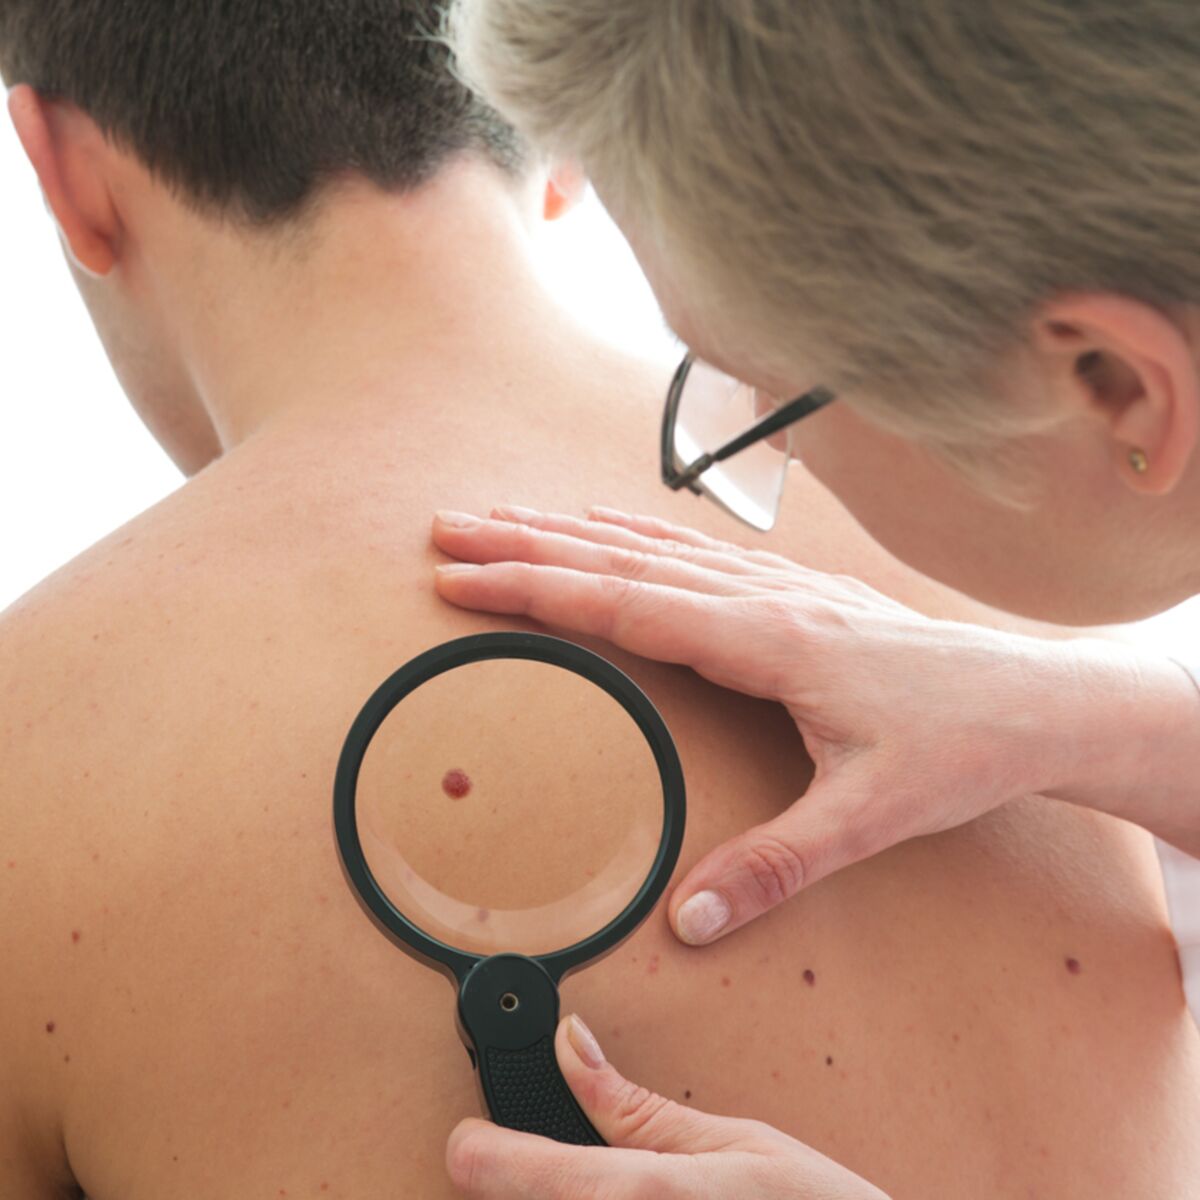 Une cicatrice peut-elle dégénérer en cancer de la peau ? : Femme ...